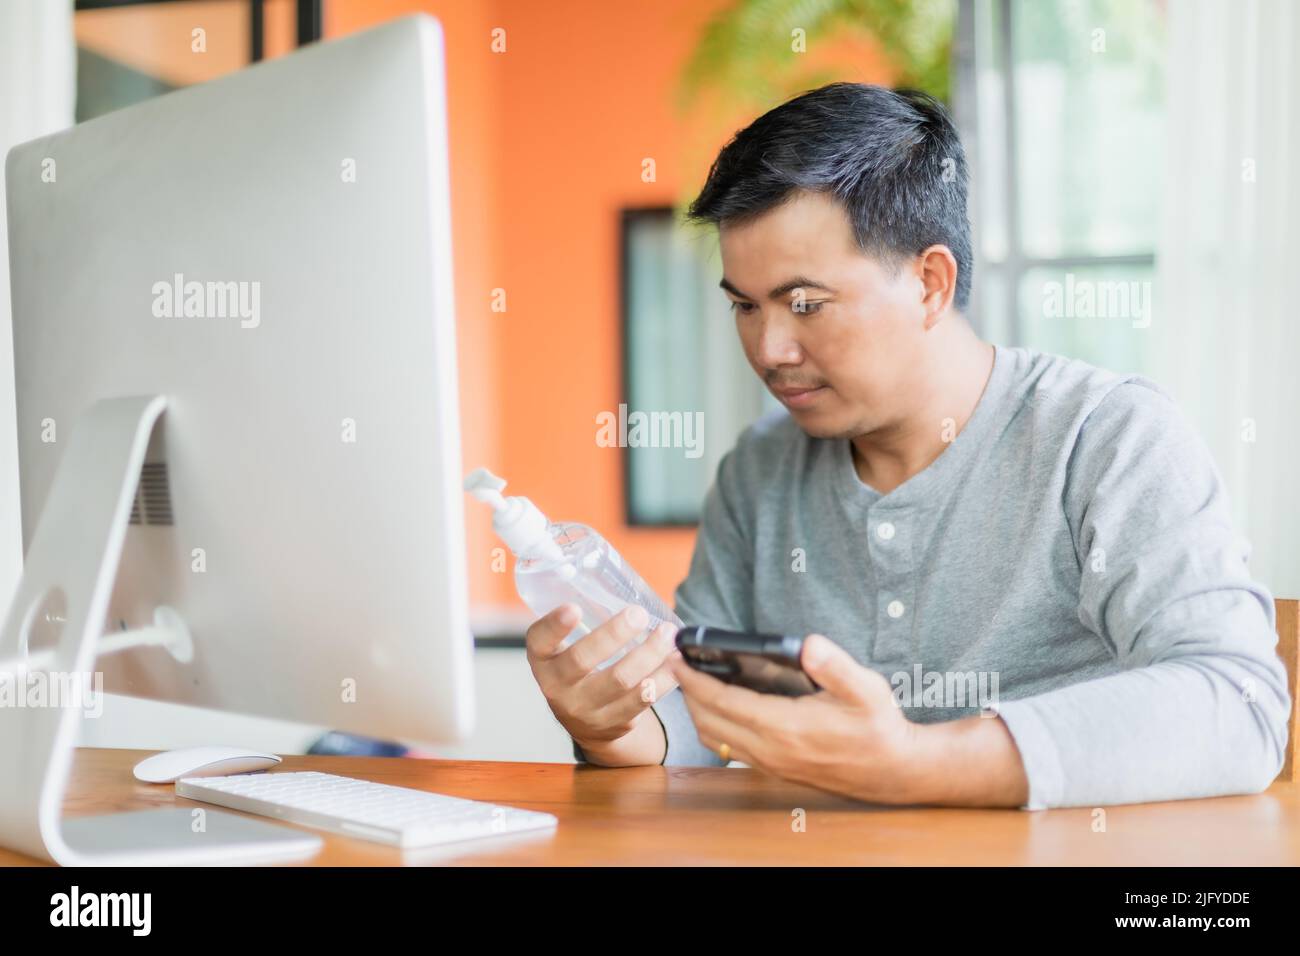 Uomo asiatico tenendo e guardando a mano igienizzatore gel bottiglia che ha ordinato di utilizzare a casa, il lavoro da casa e sano concetto Foto Stock